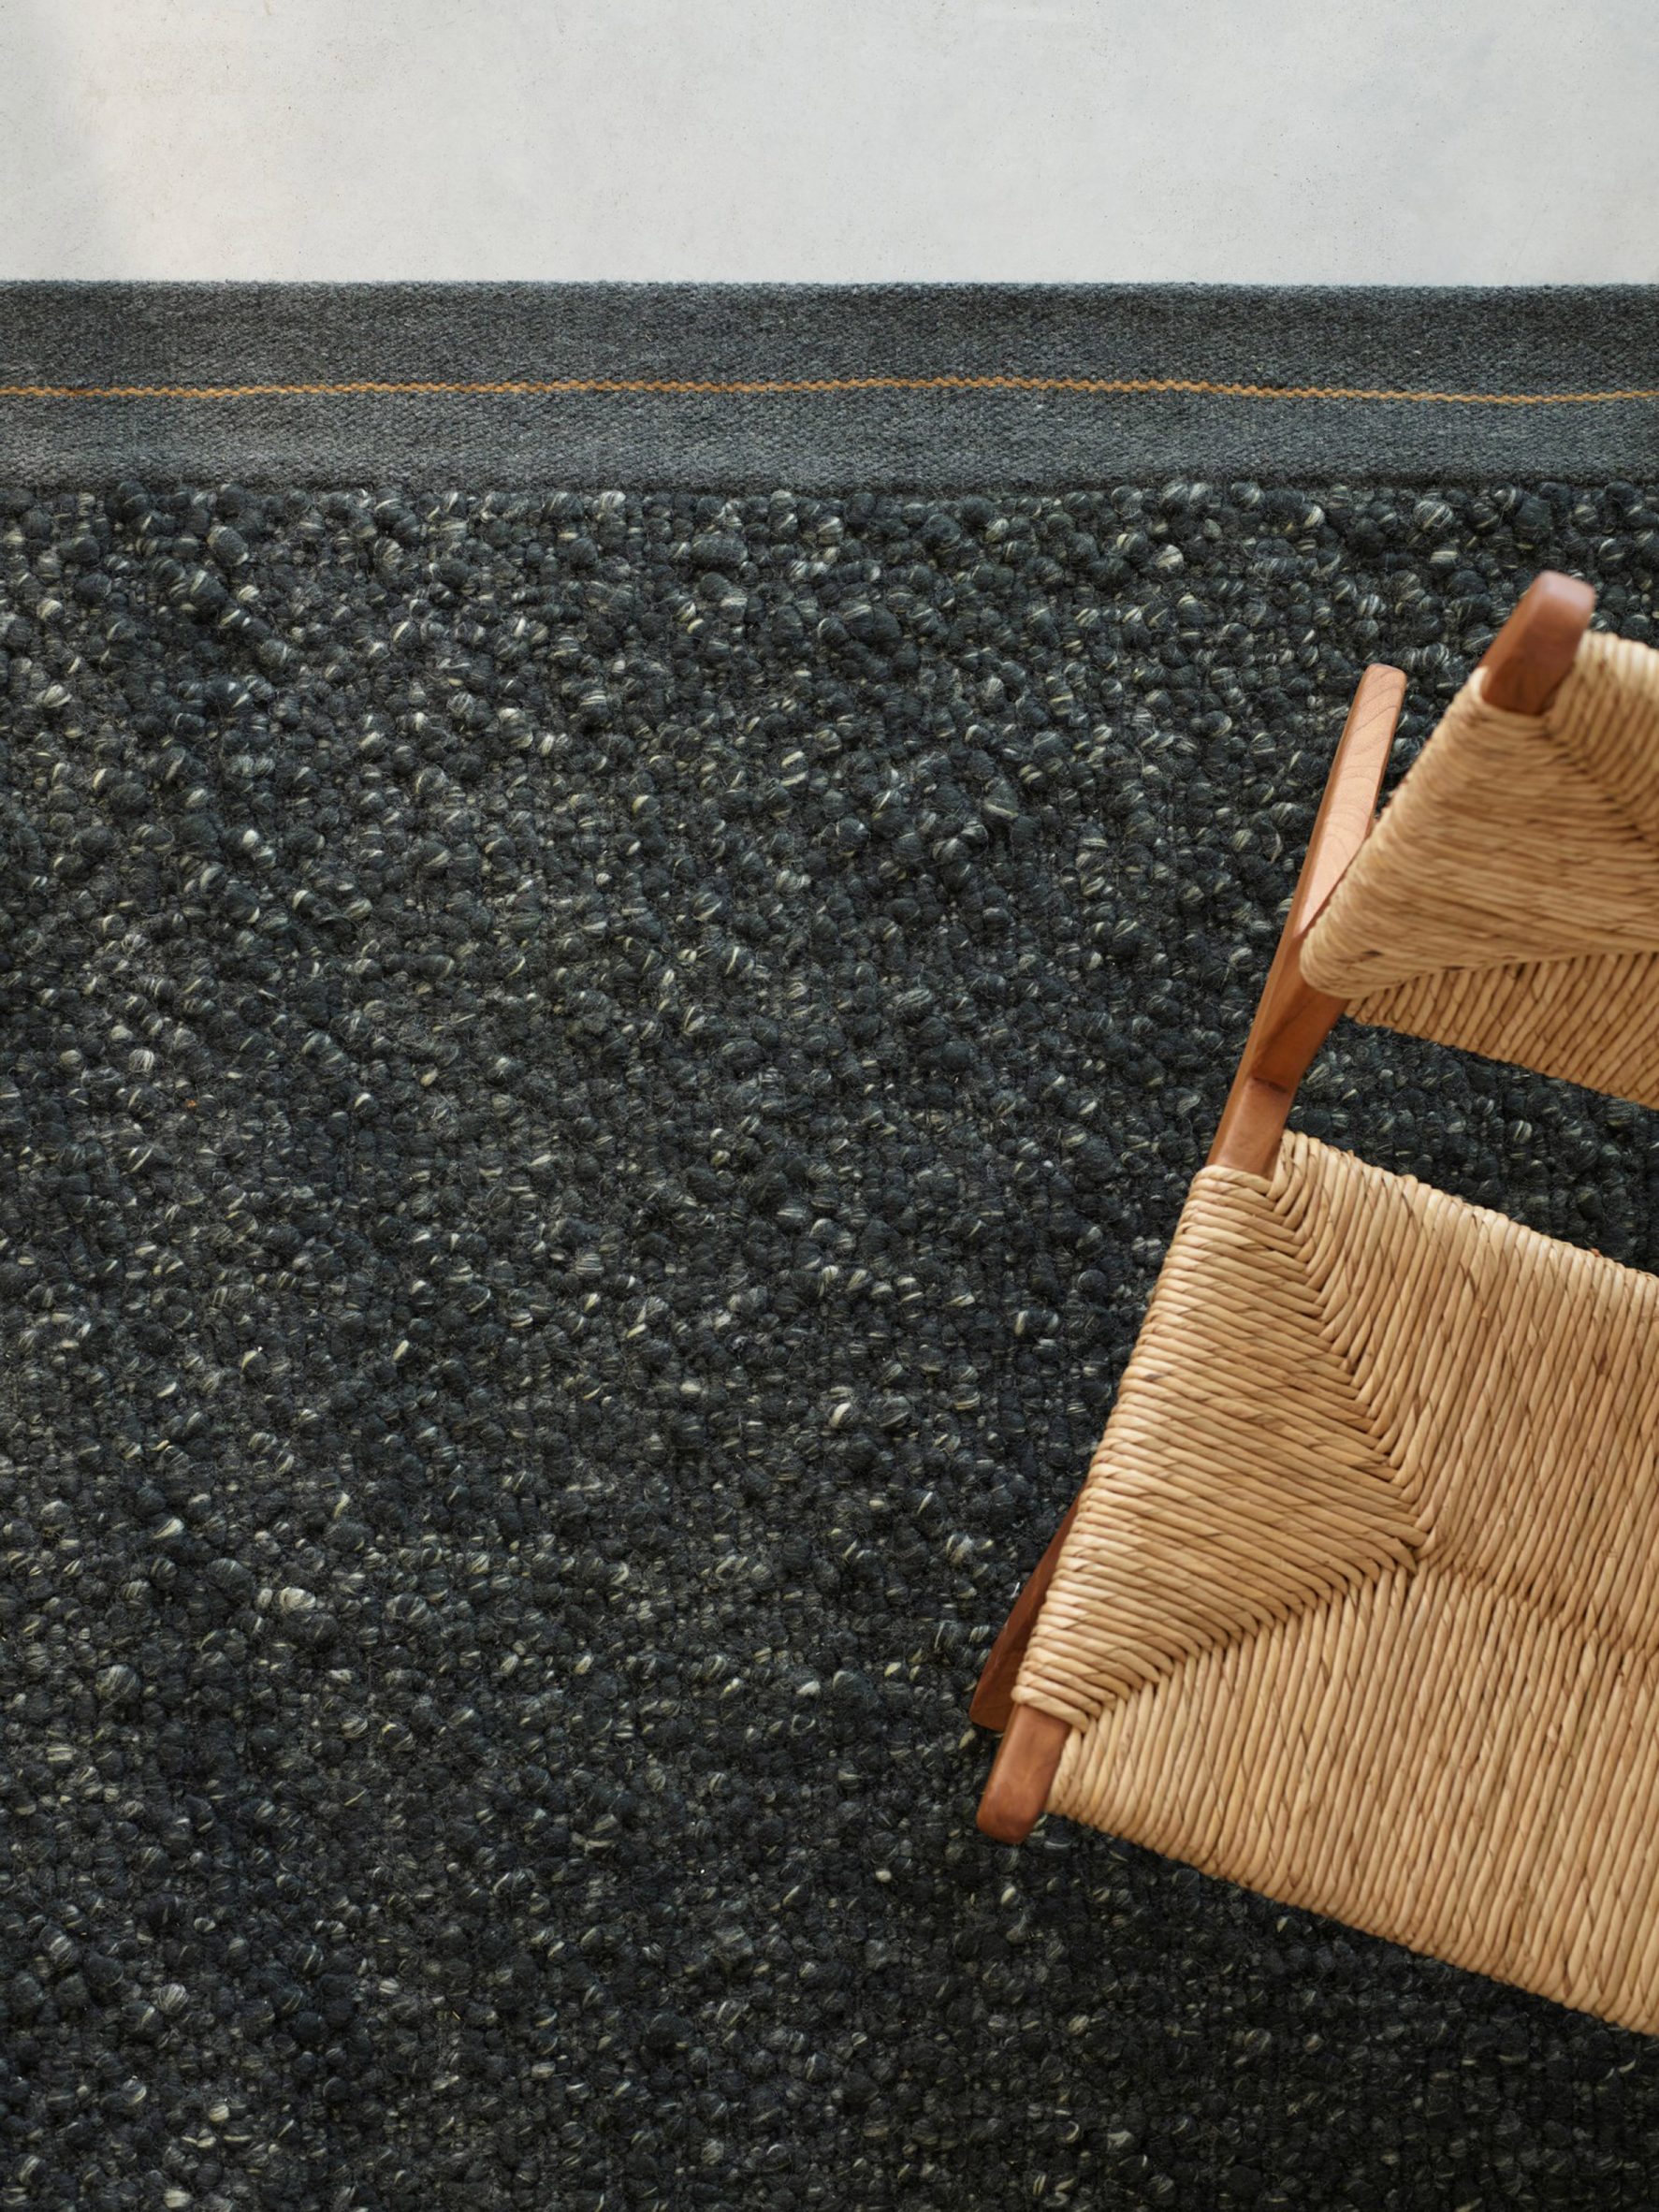 A black marled wool rug